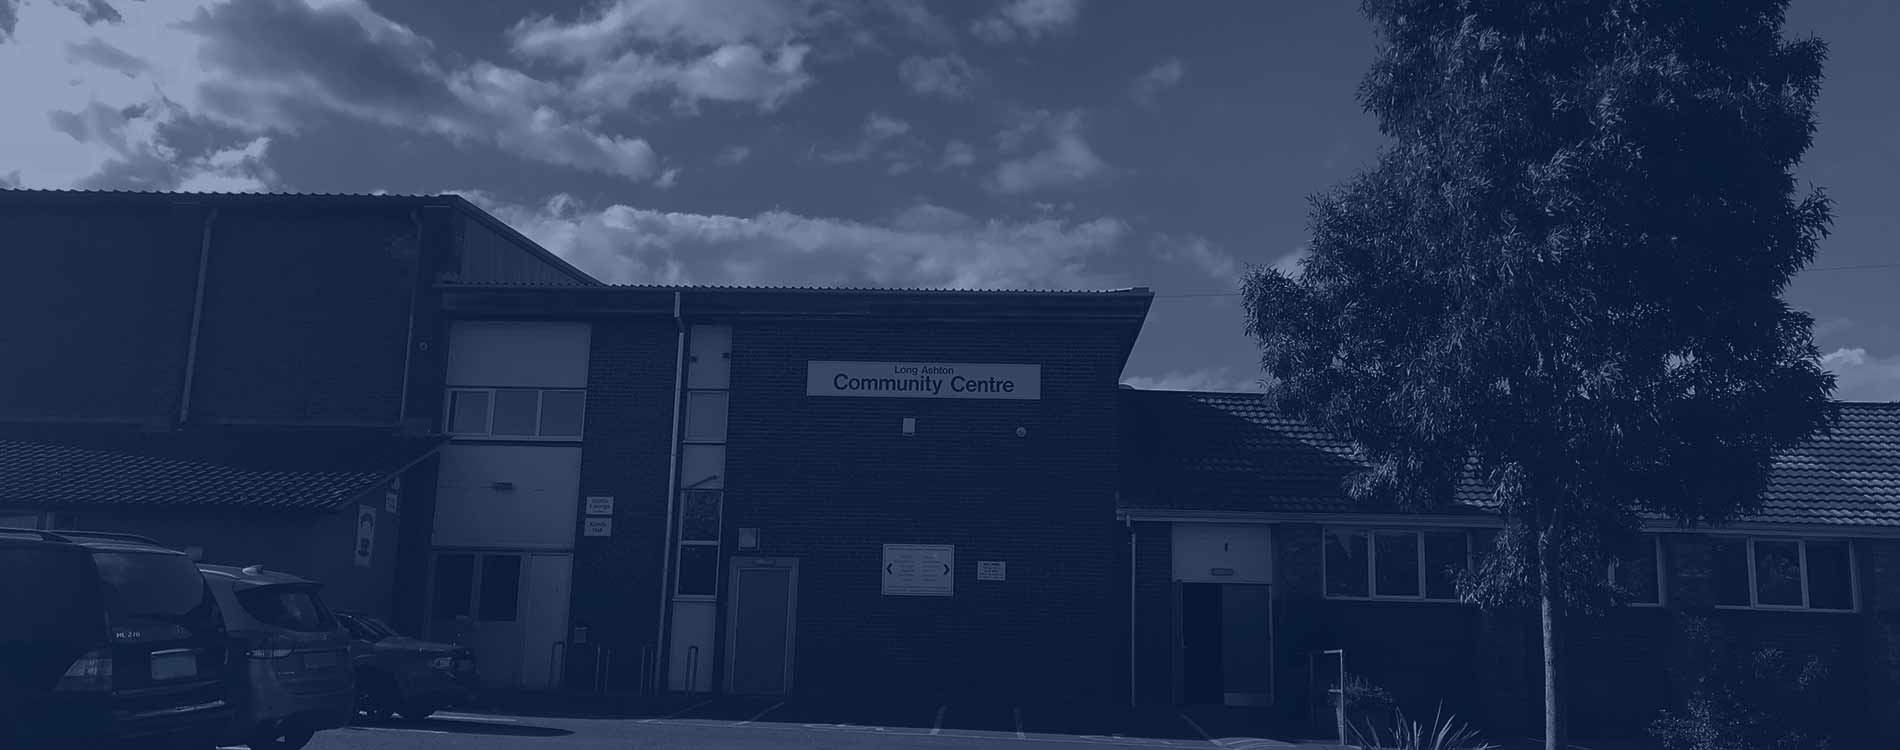 Long Ashton Community Centre - Karate classes start 11th September